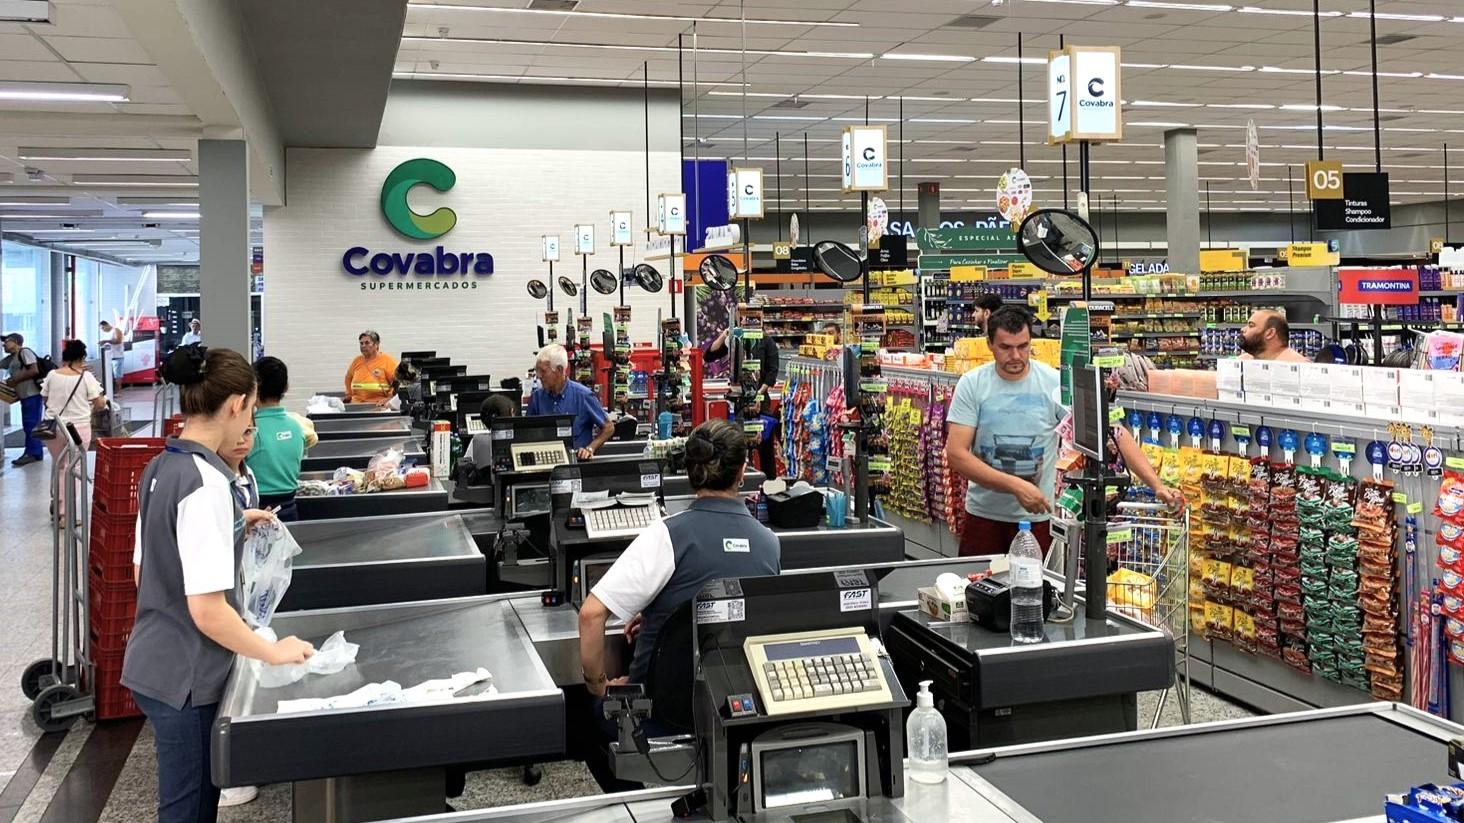 Covabra Supermercados reinaugura loja de Pedreira com descontos de até 80%